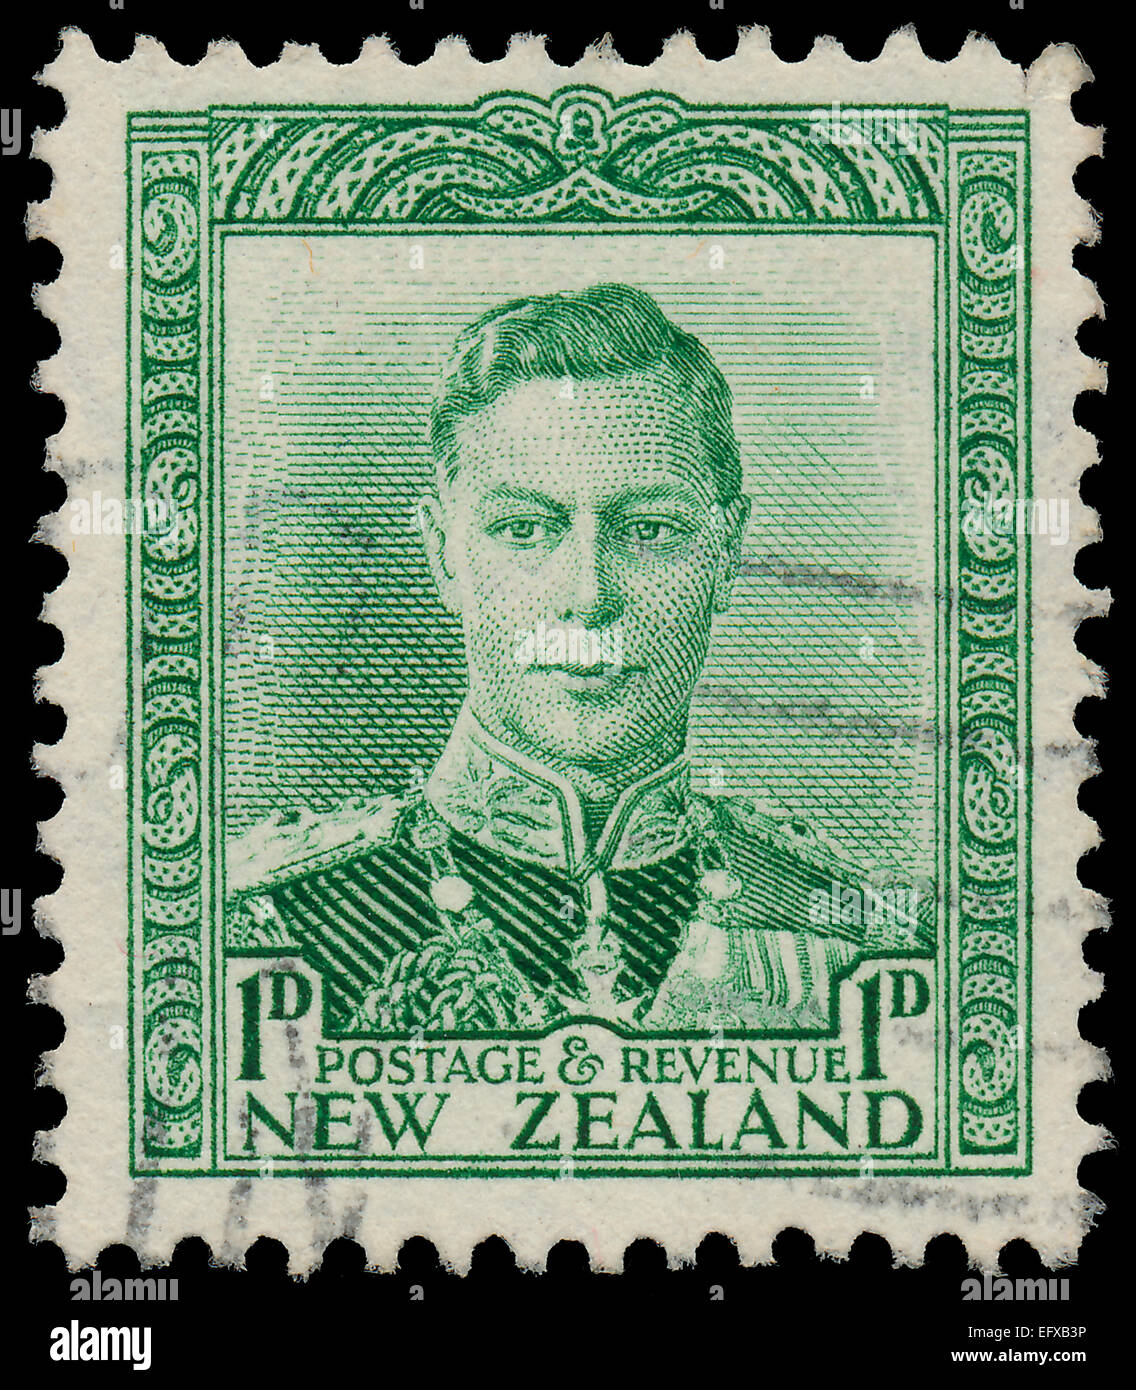 Nuova Zelanda - 1938 CIRCA: un timbro stampato in Nuova Zelanda, mostra ritratto del re George VI, 1938 circa Foto Stock